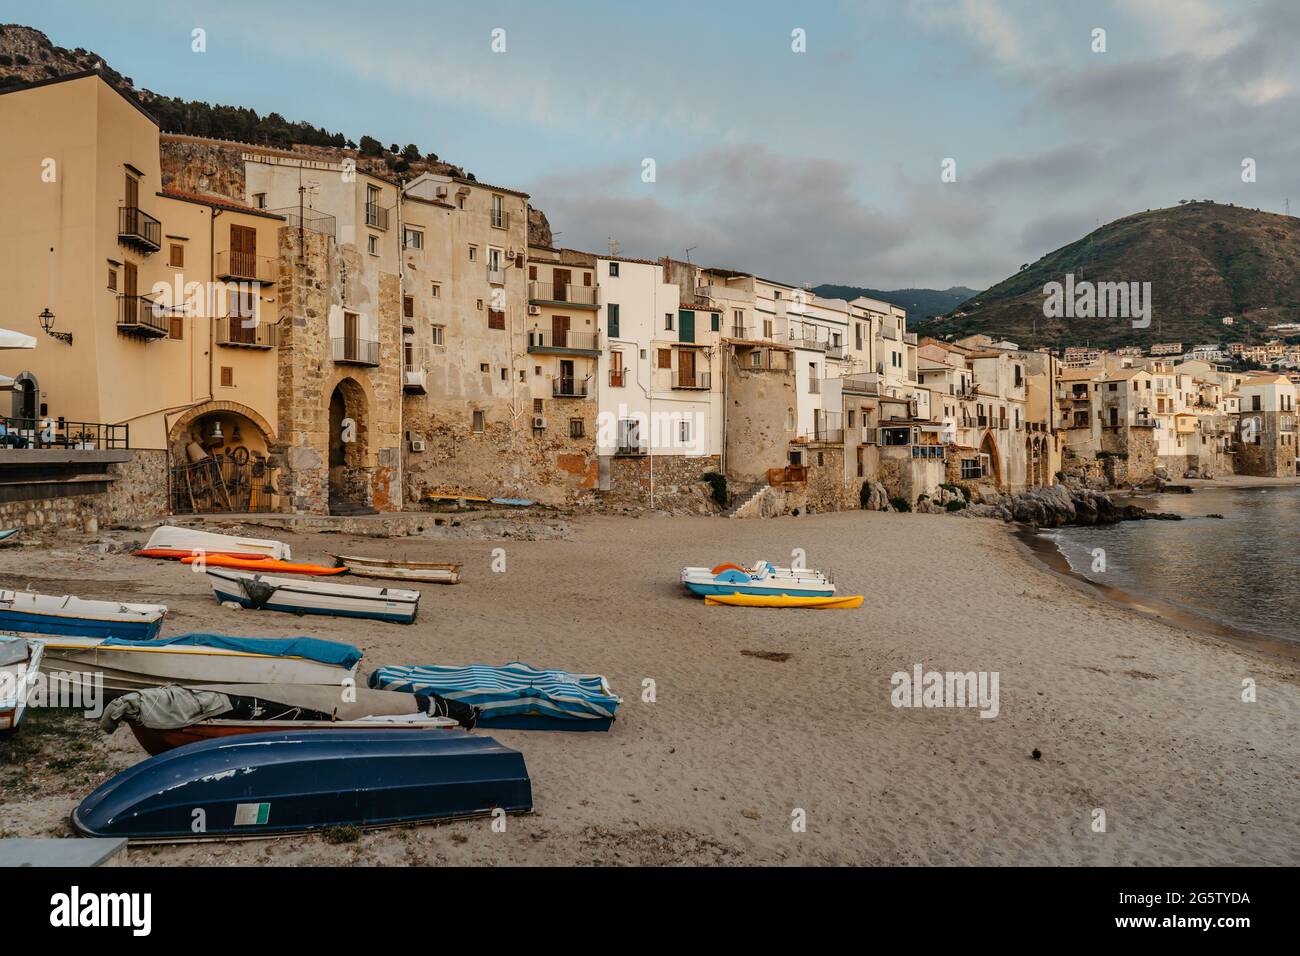 Beau vieux port avec des bateaux de pêche en bois, des maisons en pierre de front de mer colorées et une plage de sable à Cefalu, Sicile, Italie.attrayant paysage urbain d'été, Banque D'Images